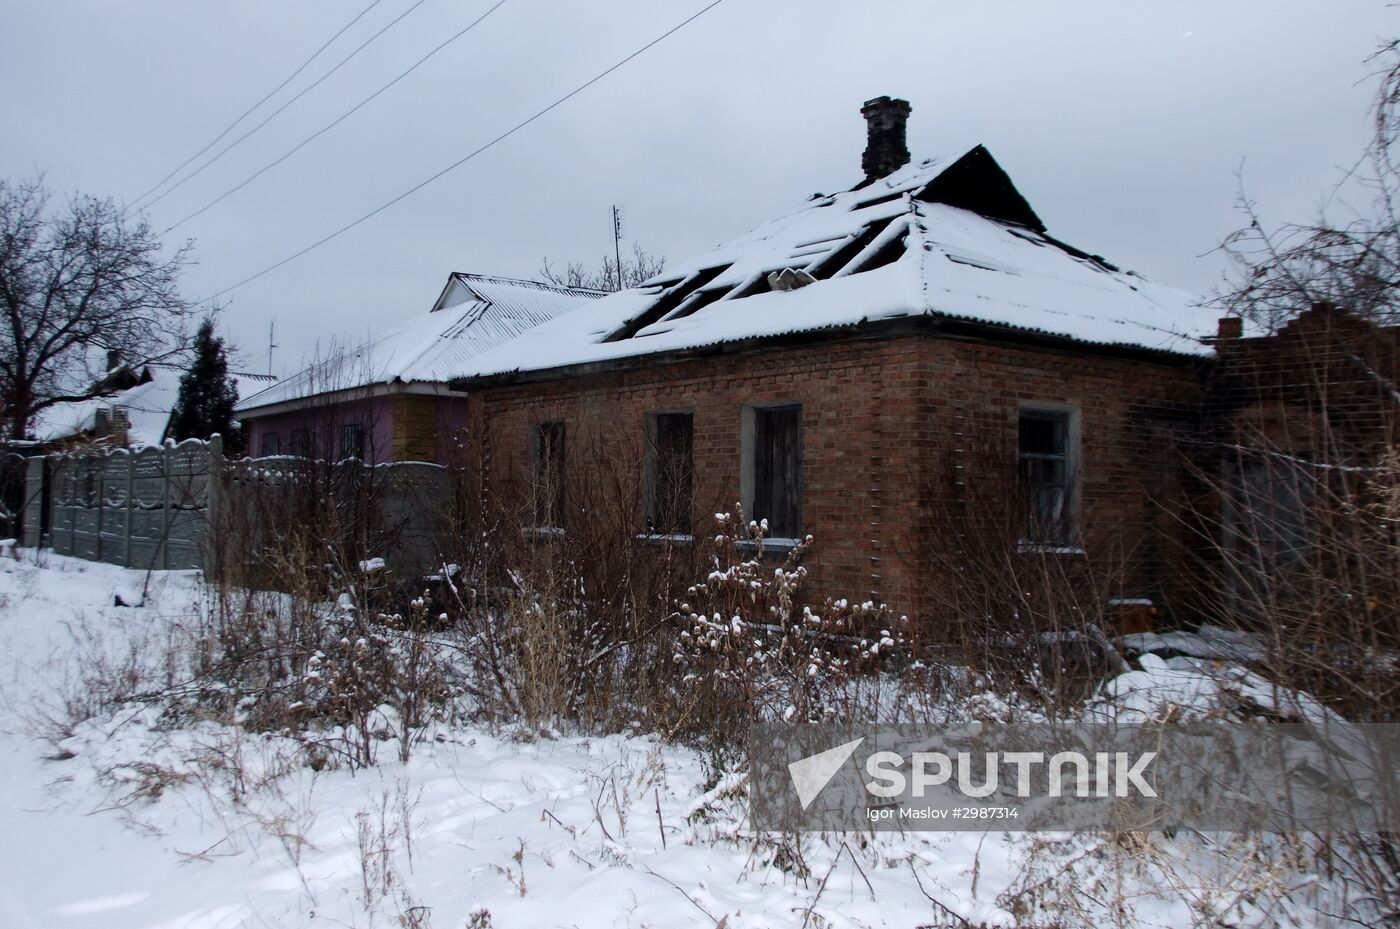 Damage caused by Gorlovka shellings outside Donetsk